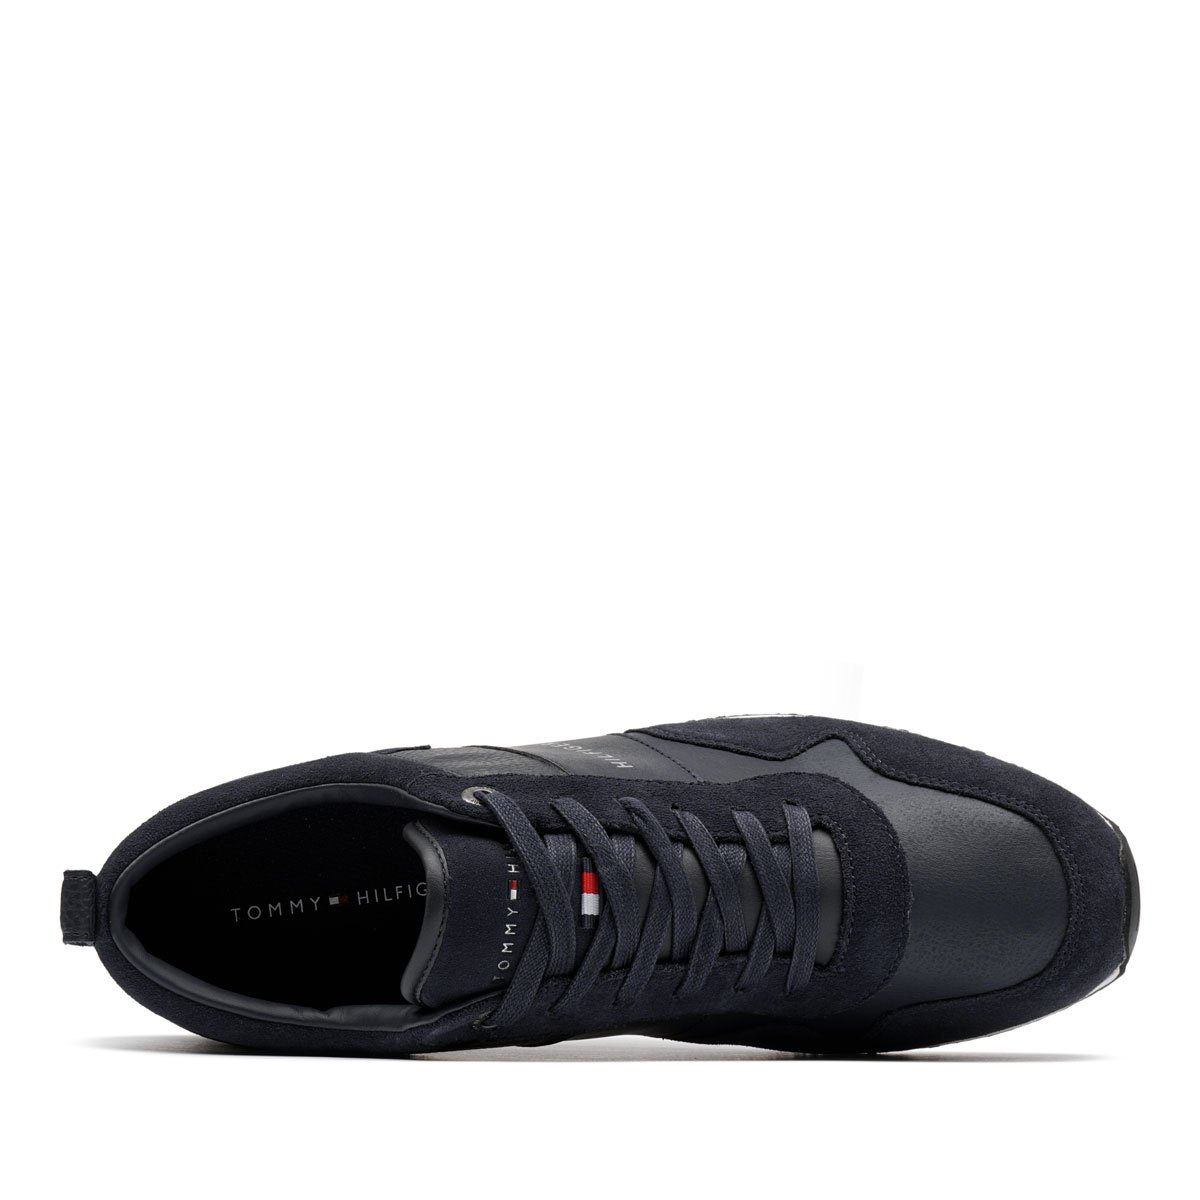 Tommy Hilfiger Iconic Leather Suede Mix Runner Мъжки спортни обувки FM0FM00924-403